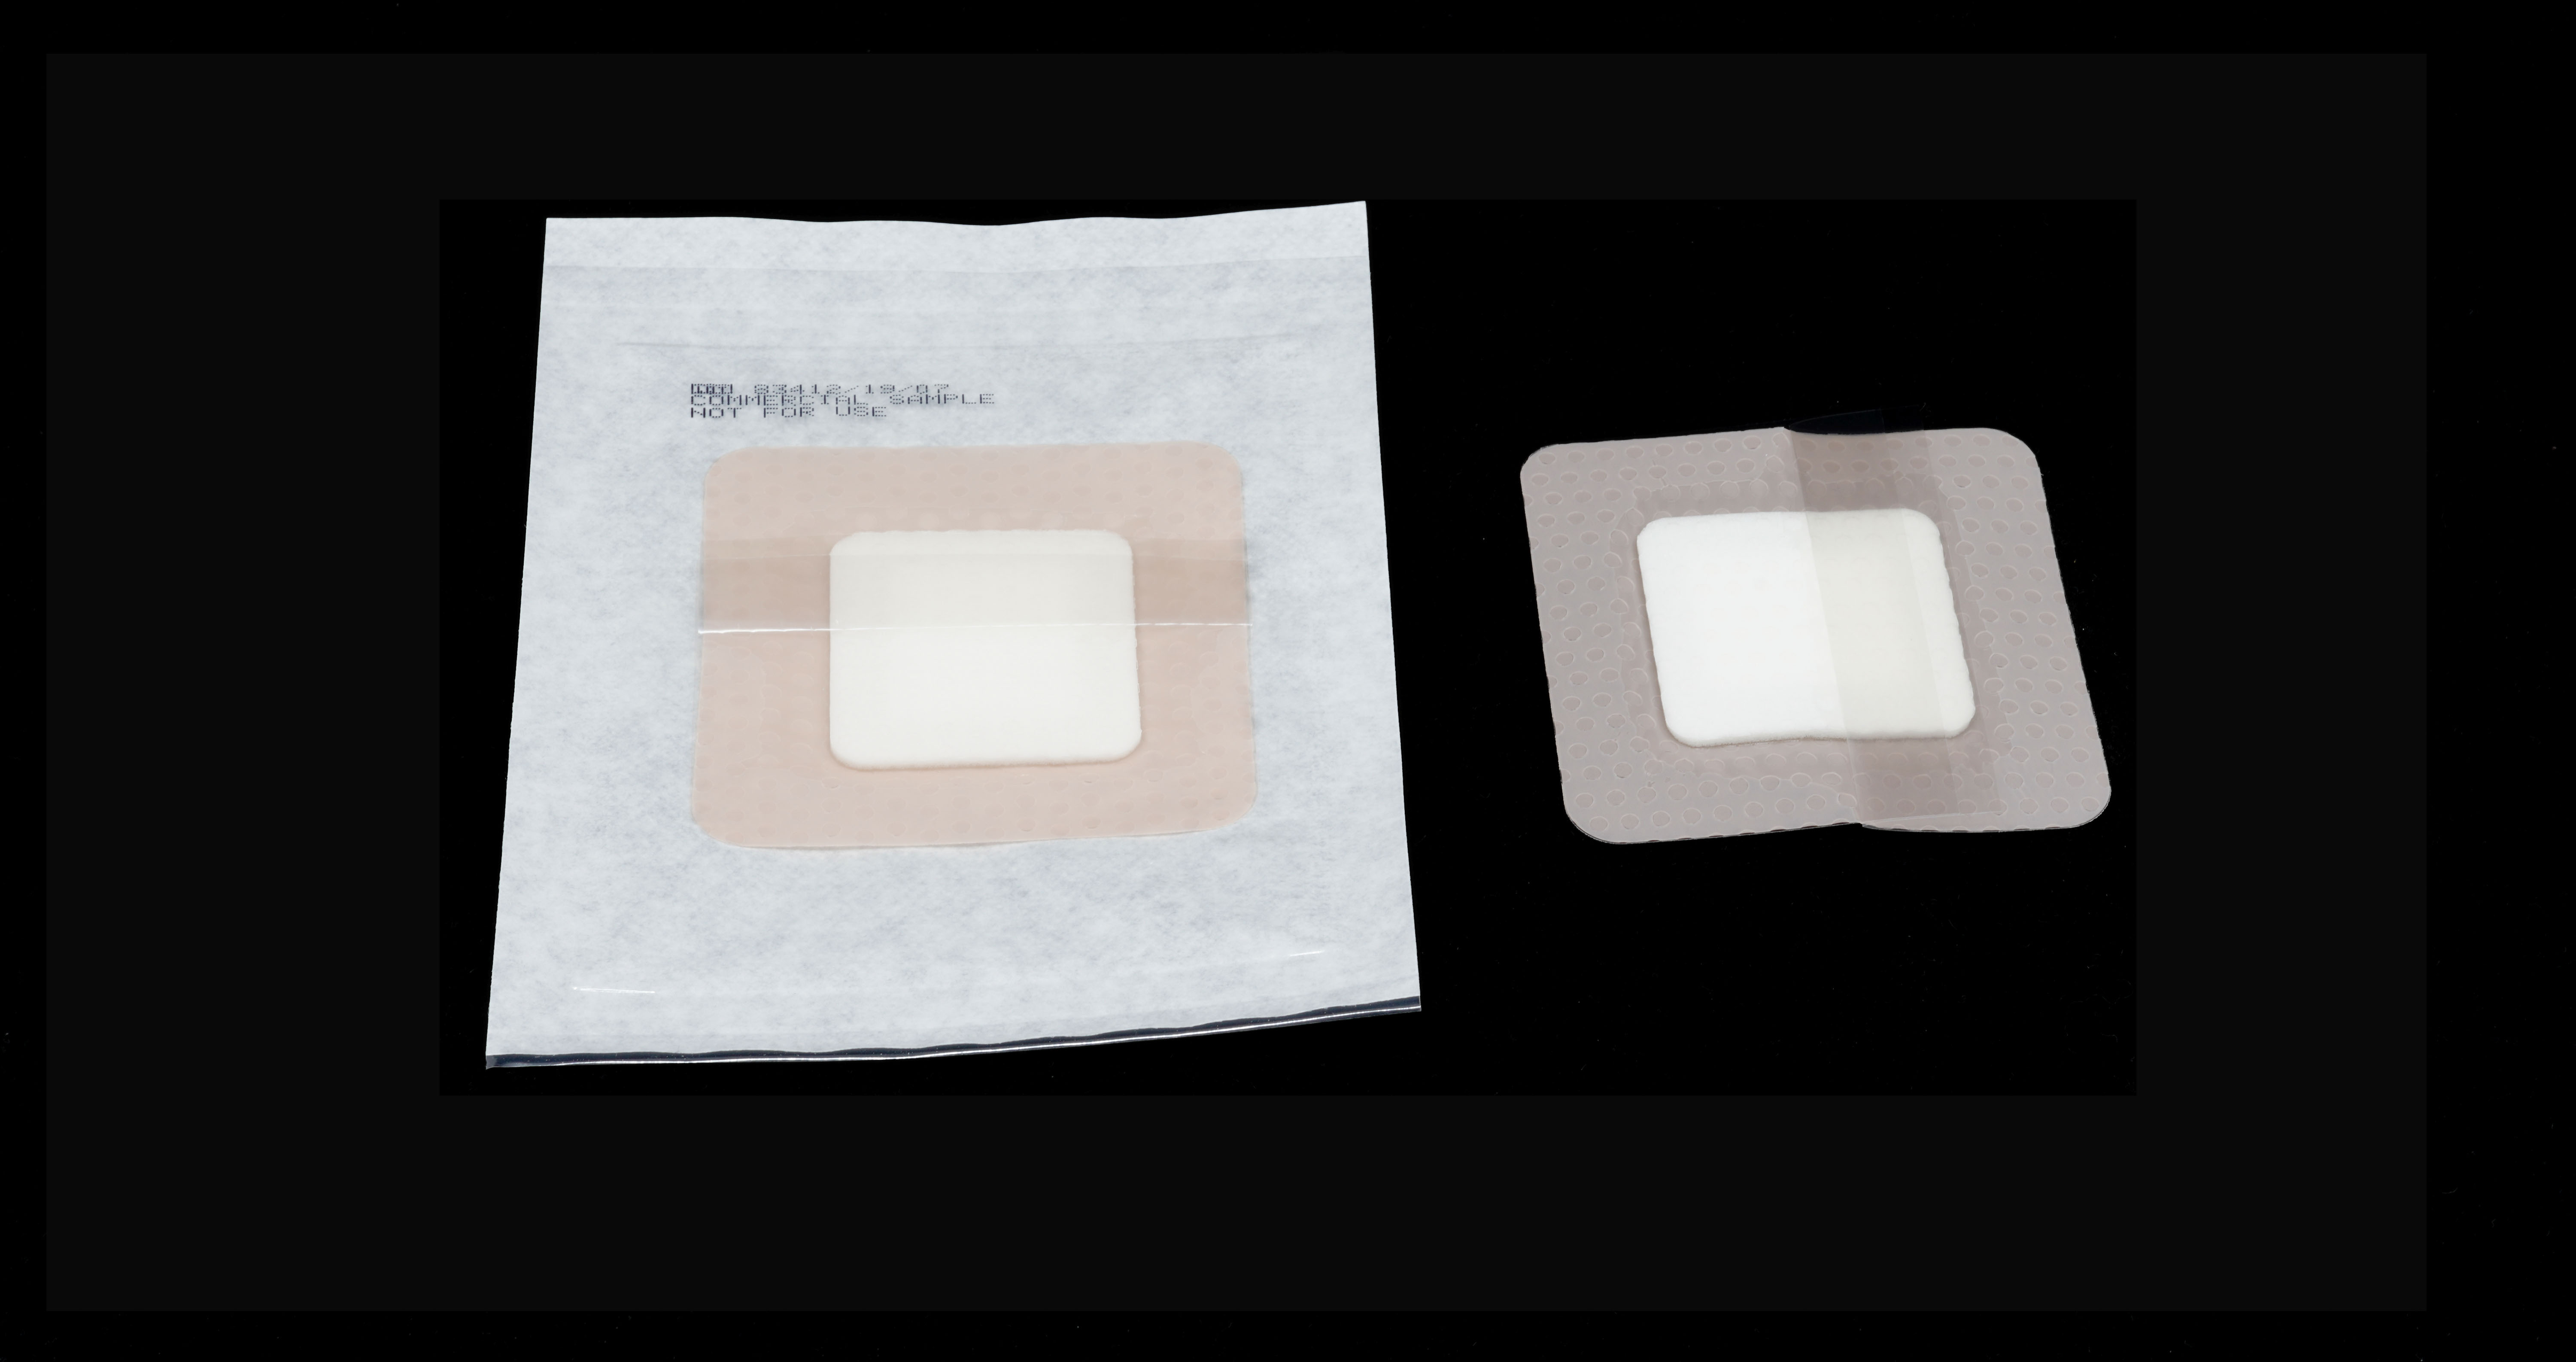 <ul><li>Film polyuréthane couleur chair </li><li>Compresse absorbante spécifiée par le client</li><li>Bord adhésif et interface plaie en gel de silicone pour un retrait atraumatique</li></ul>